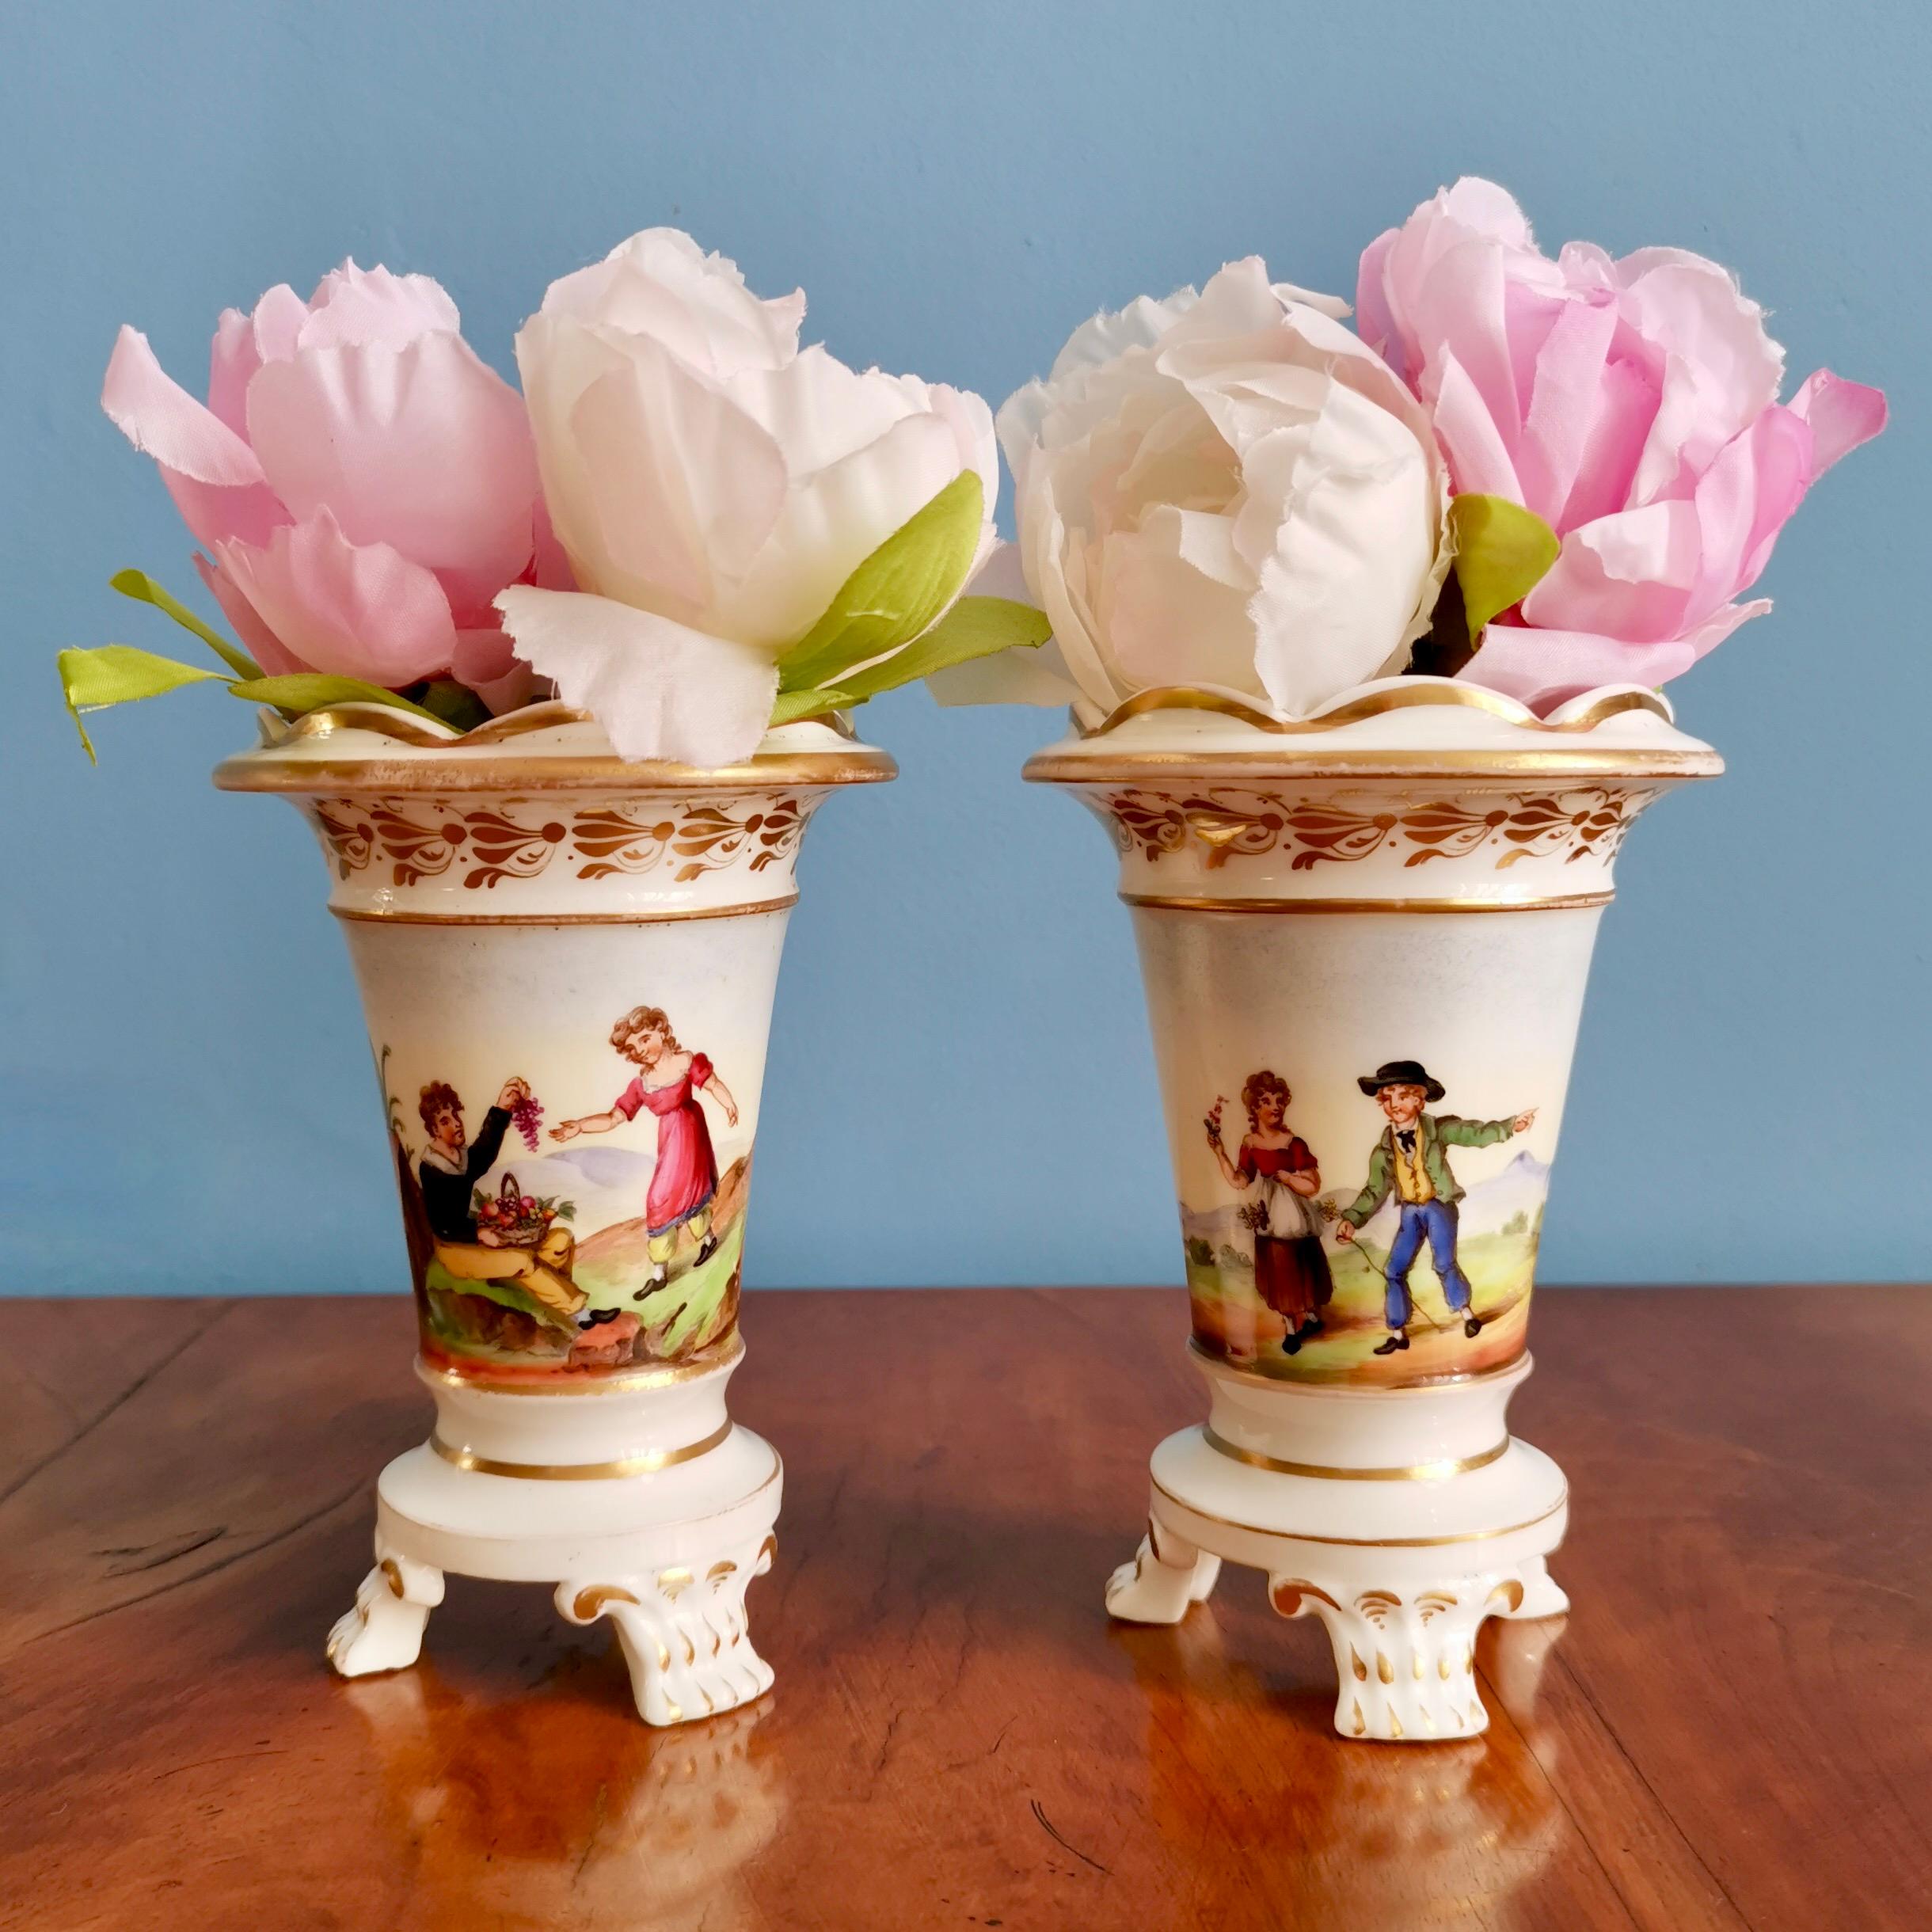 Il s'agit d'une paire de vases renversés très charmante, fabriquée par un fabricant inconnu du Staffordshire vers 1820.

Au début du XIXe siècle, il y avait environ 300 poteries dans le Staffordshire, qui était à l'époque l'un des plus grands